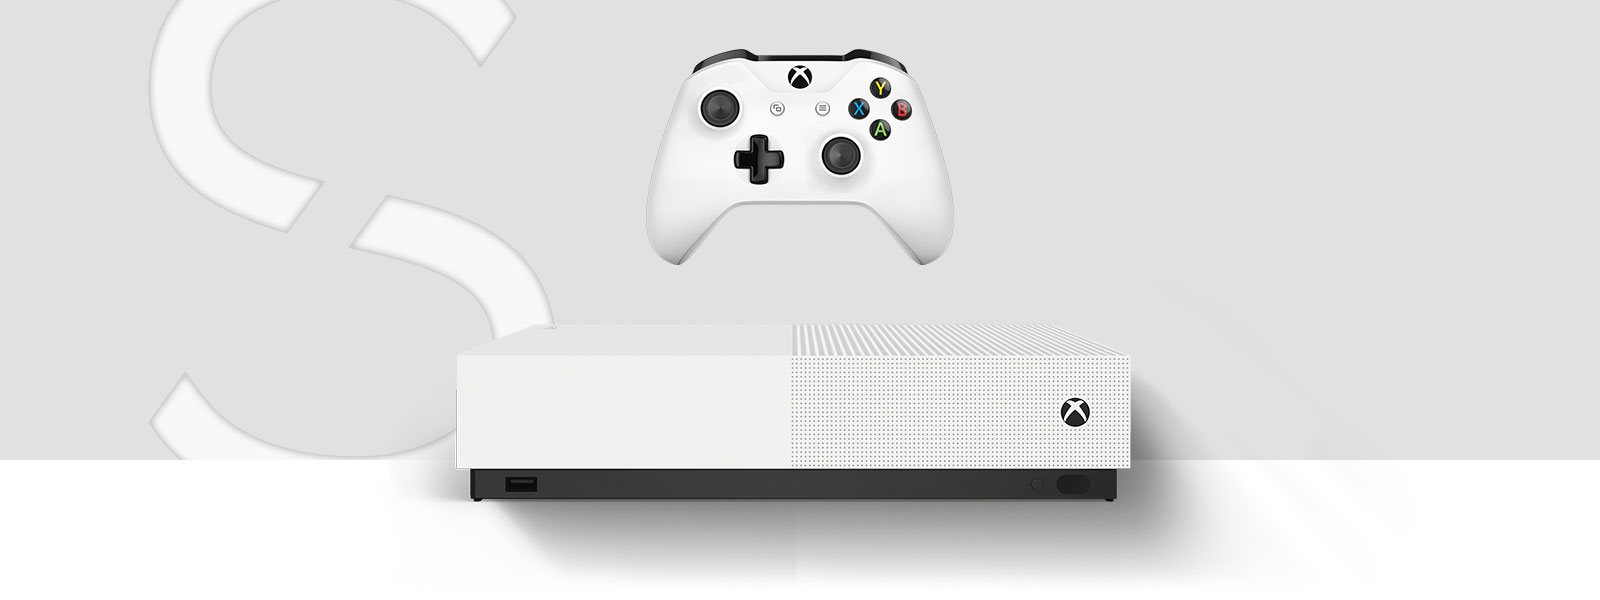 Xbox One S 1TB All Digital Edition